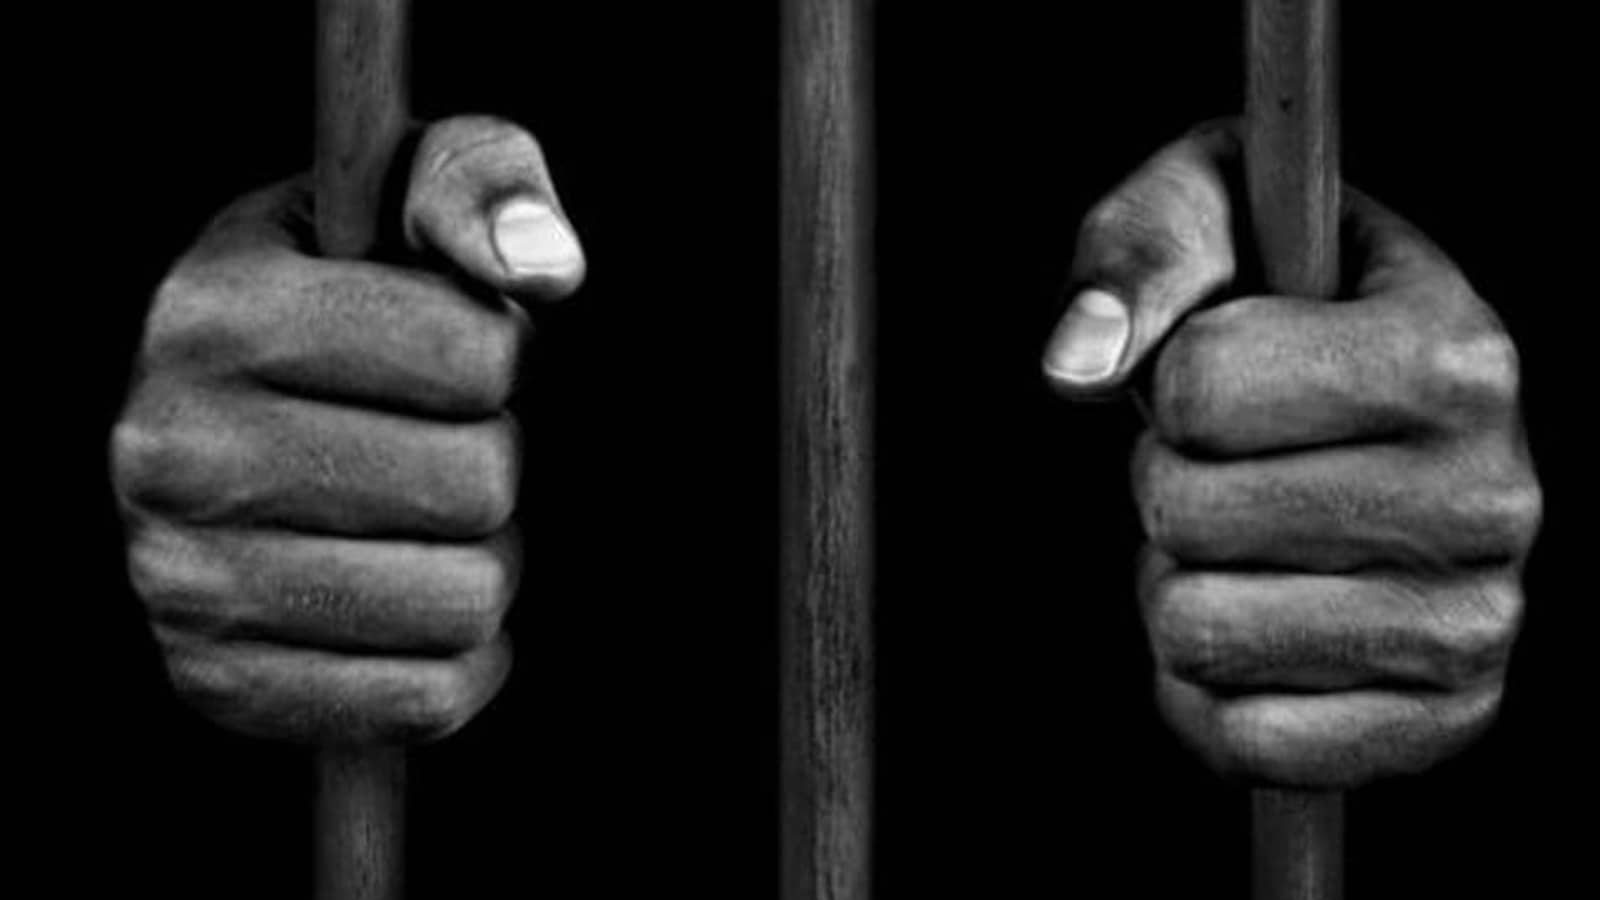 Hindi News: संयुक्त राज्य अमेरिका: एक न्यायाधीश ने बच्चों का यौन शोषण करने के आरोप में एक व्यक्ति को आजीवन कारावास की सजा सुनाई है